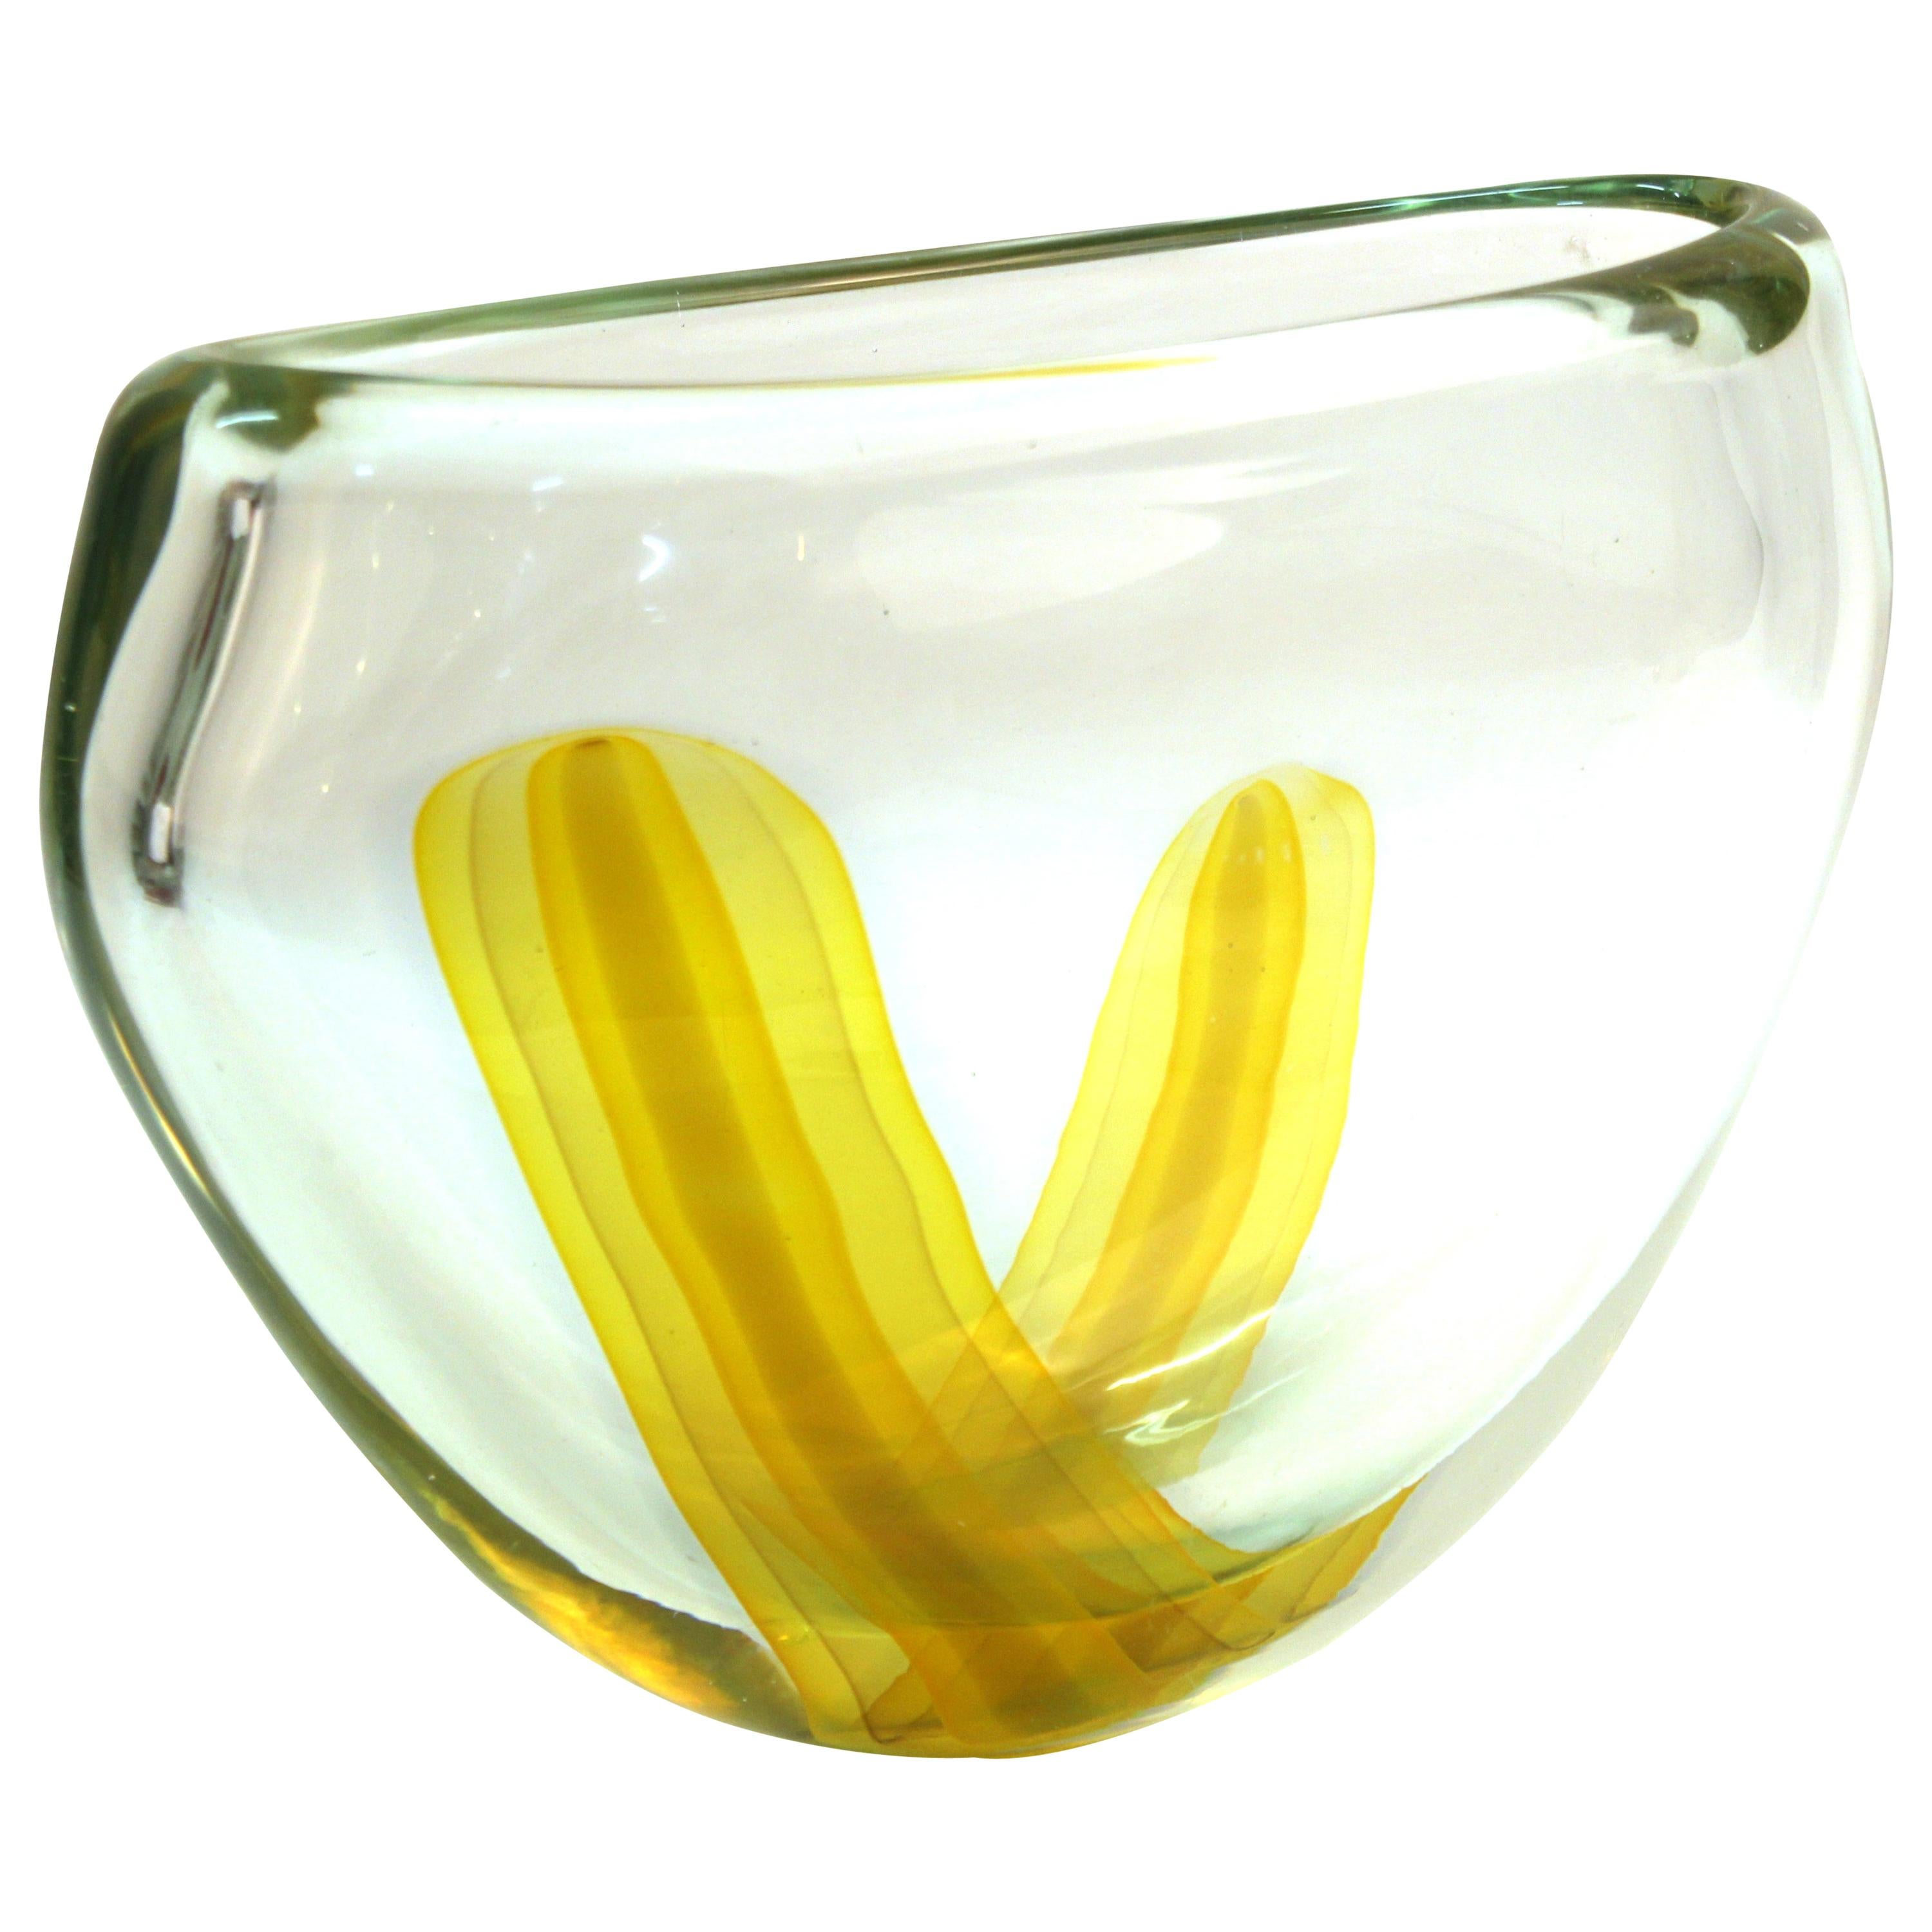 Italian Modern Murano Art Glass Vase with Yellow Strip